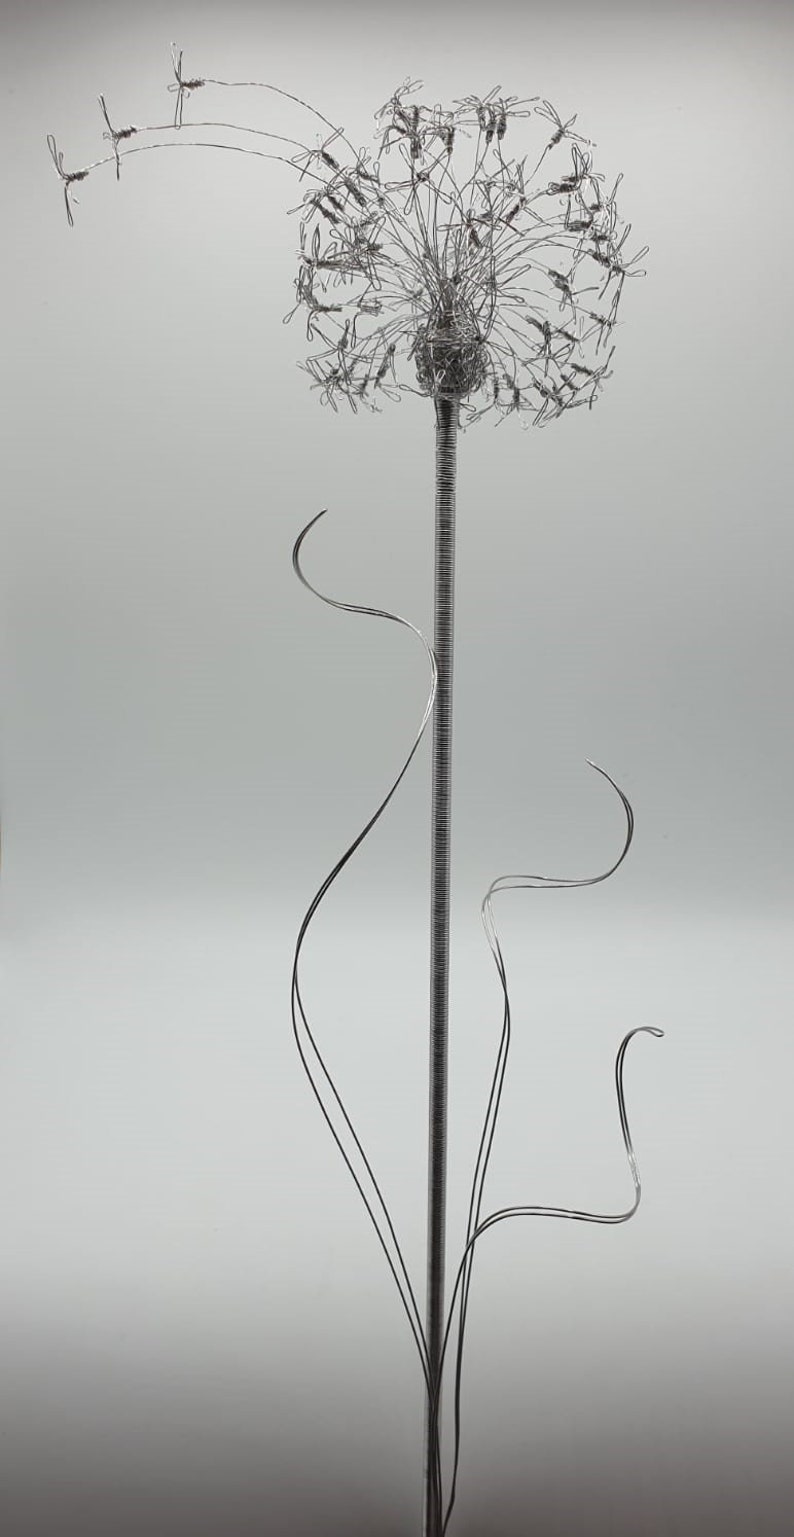 Handmade Stainless Steel Dandelion flower Wire Art Ornament | Etsy